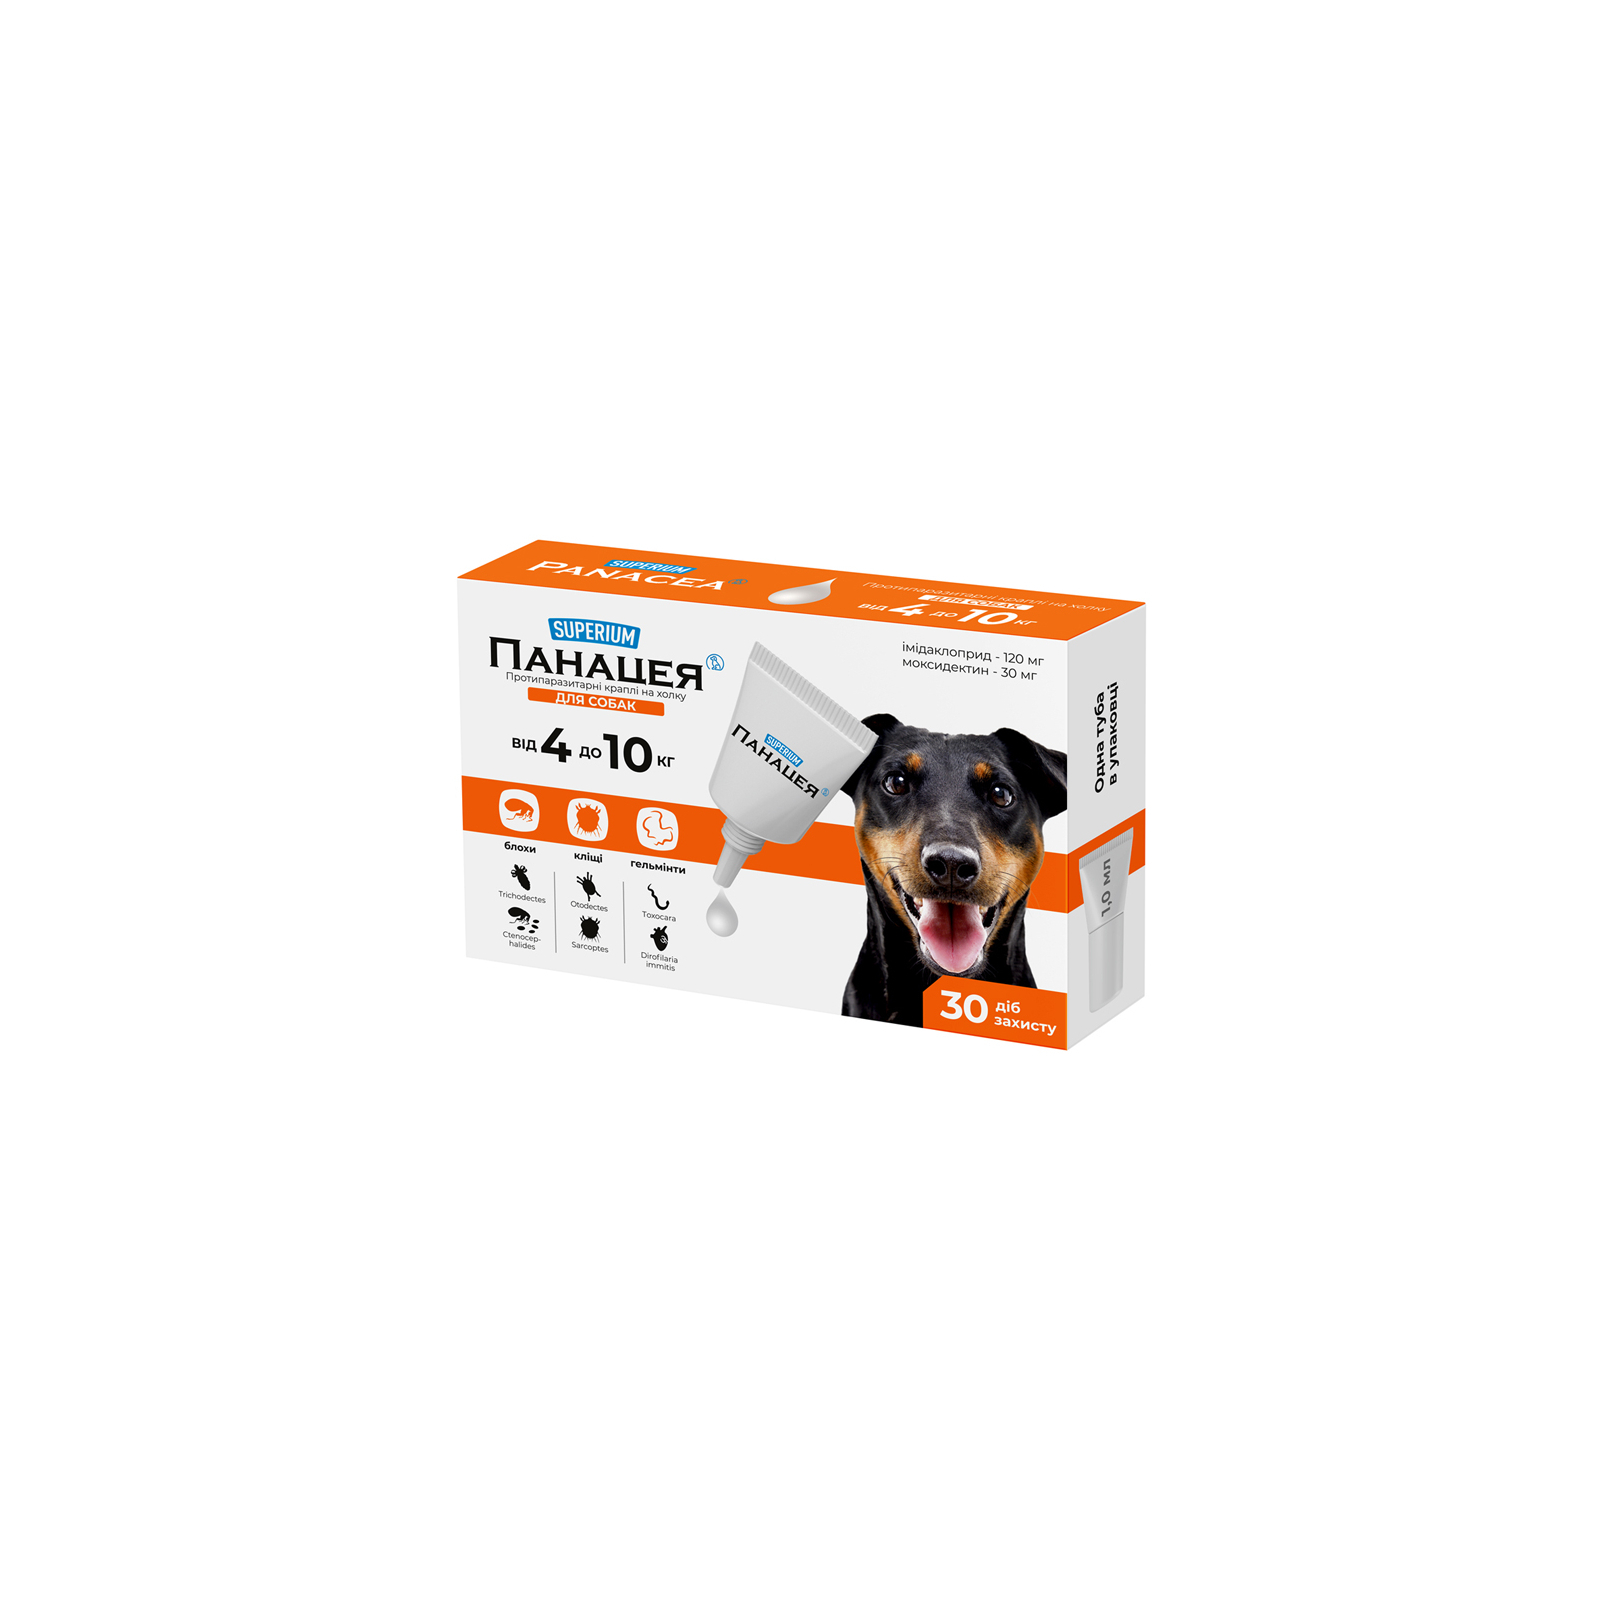 Капли для животных SUPERIUM Панацея Противоразитарные для собак 4-10 кг (9142)